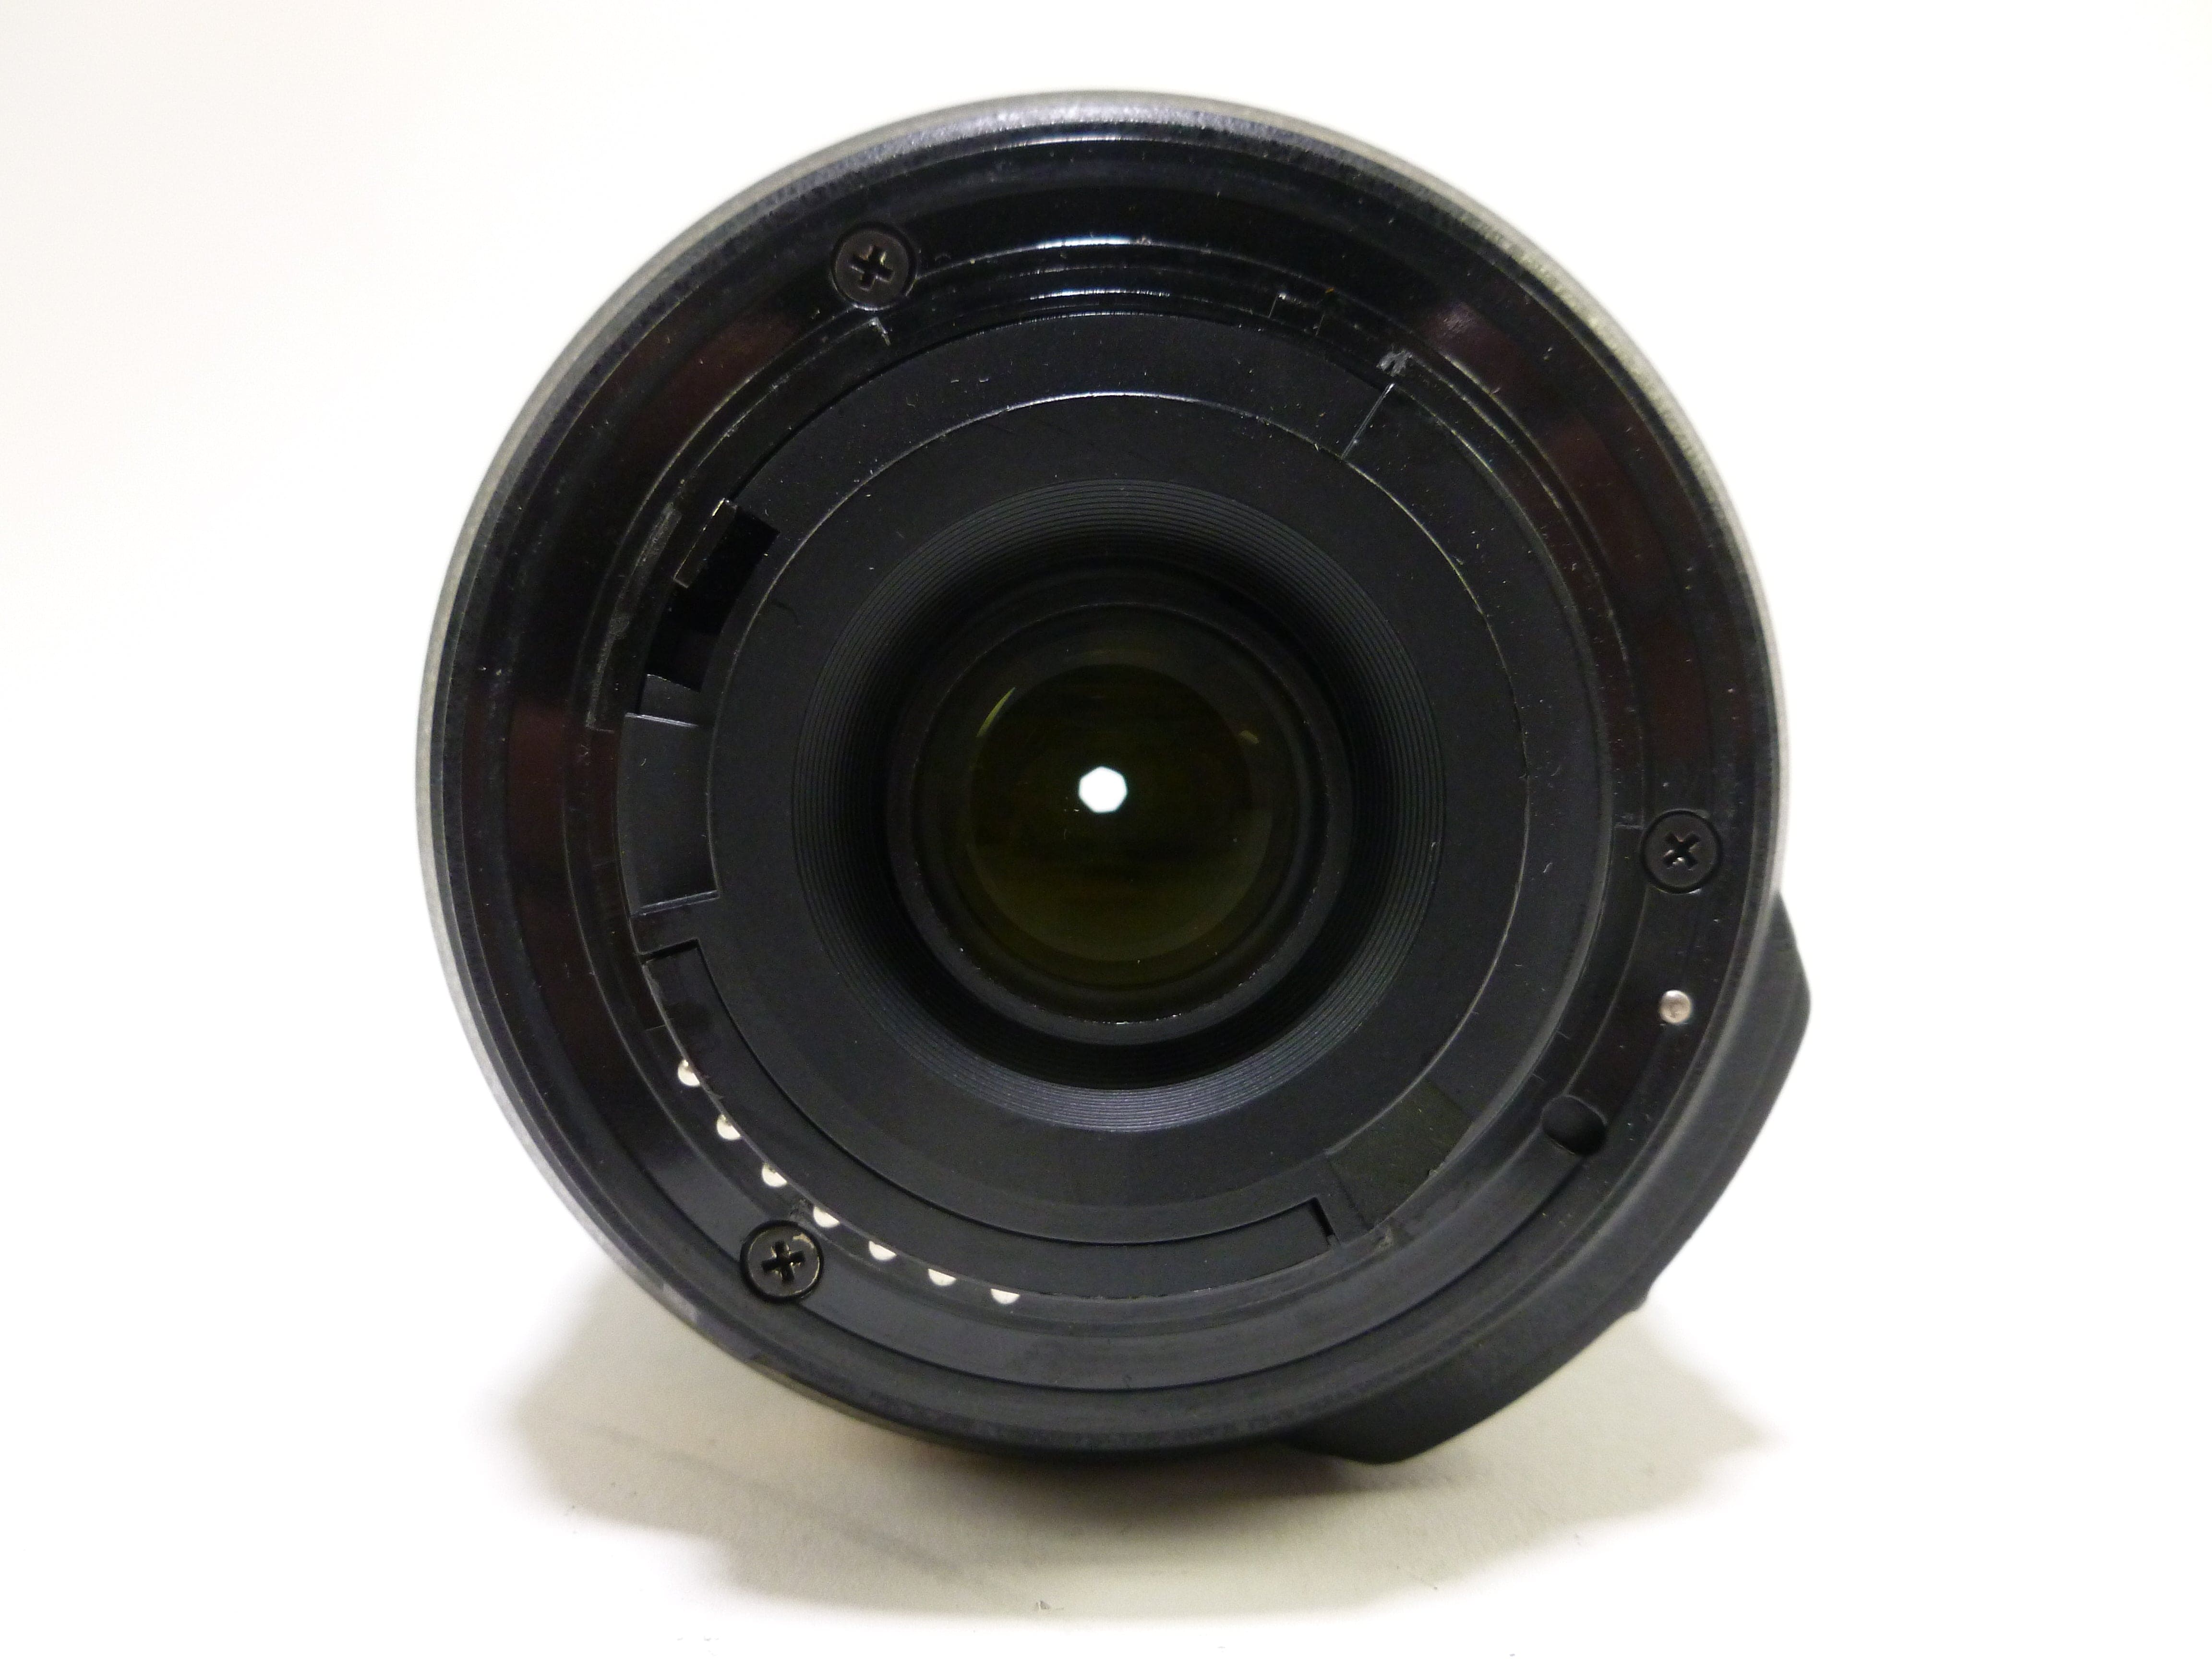 Nikon AF-S Nikkor 55-200mm f/4-5.6G ED DX VR Lens